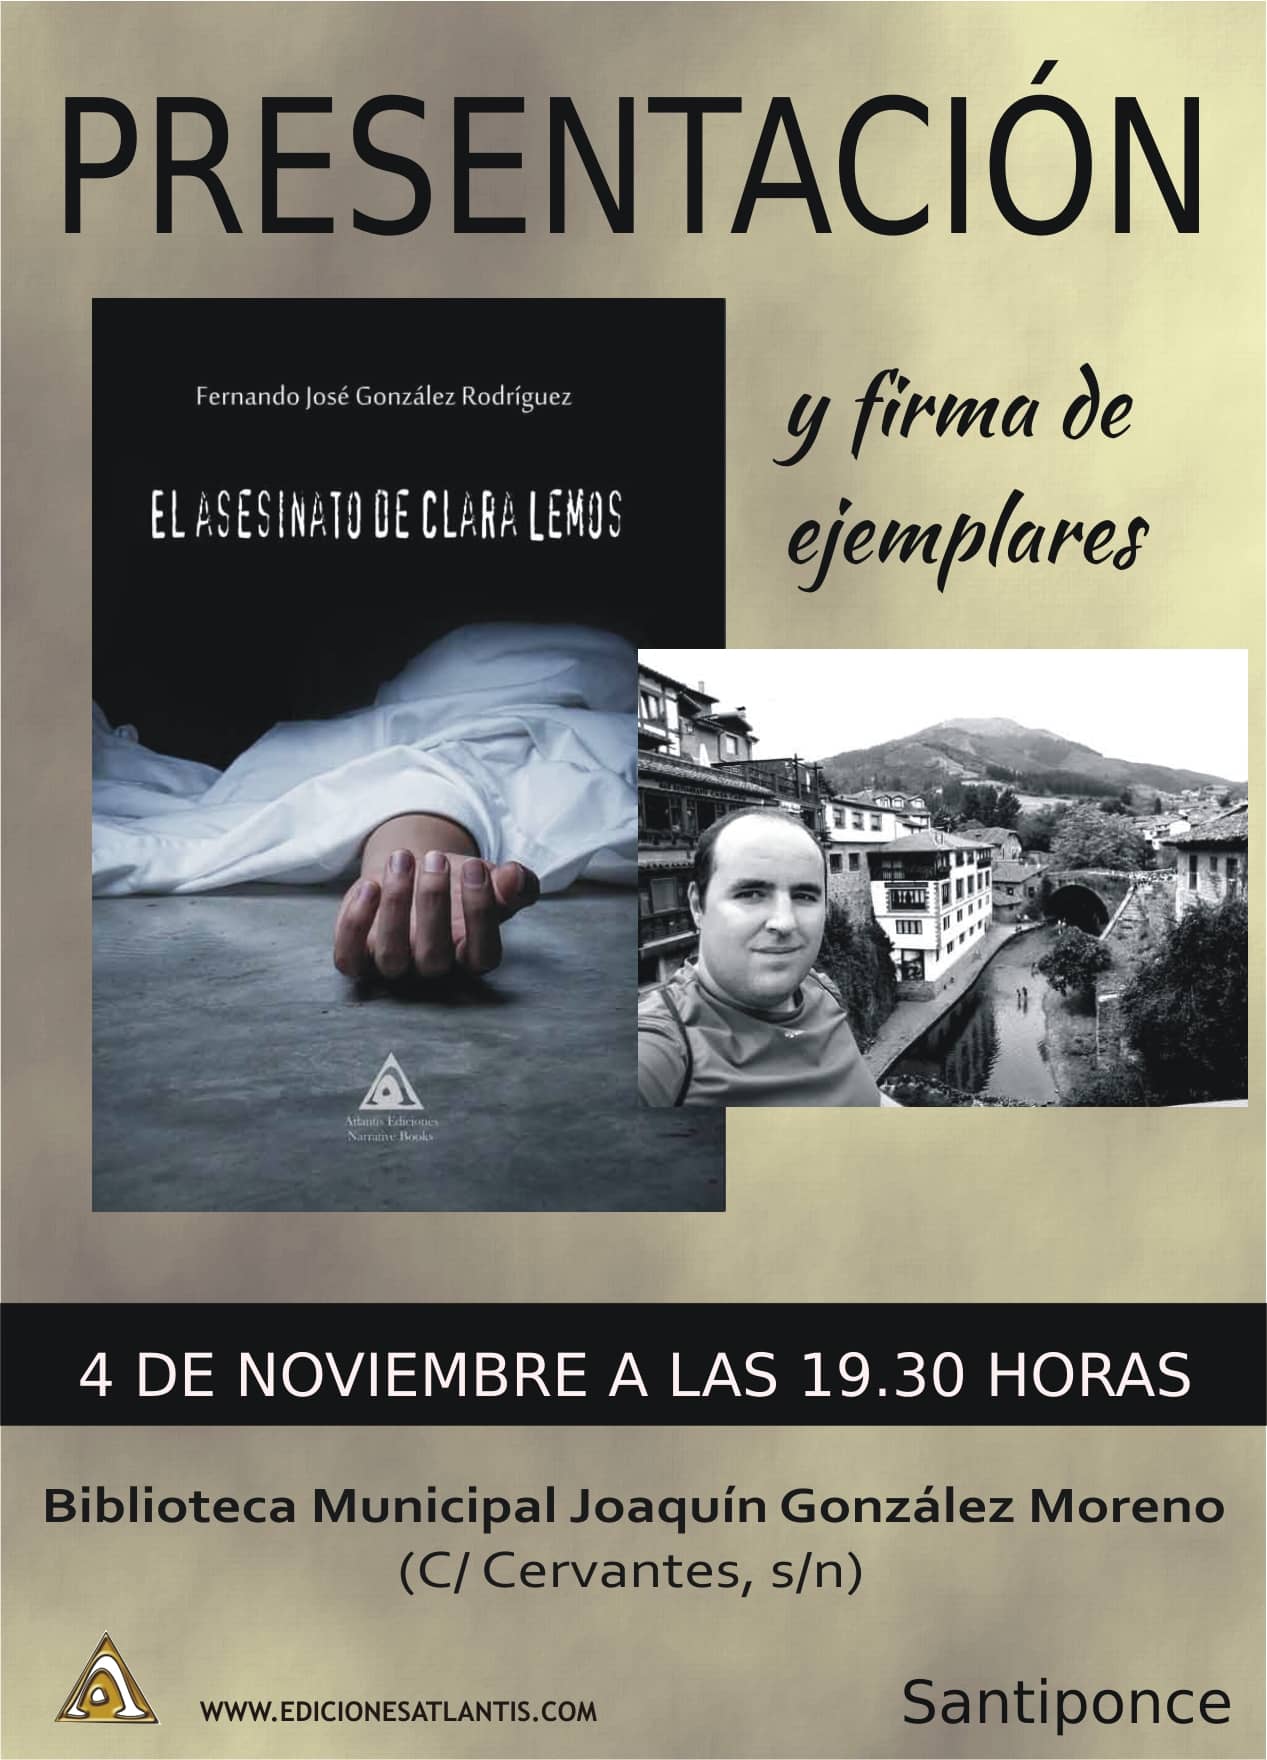 El escritor Fernando José González Rodríguez presenta su nueva obra: “El asesinato de Clara Lemos”